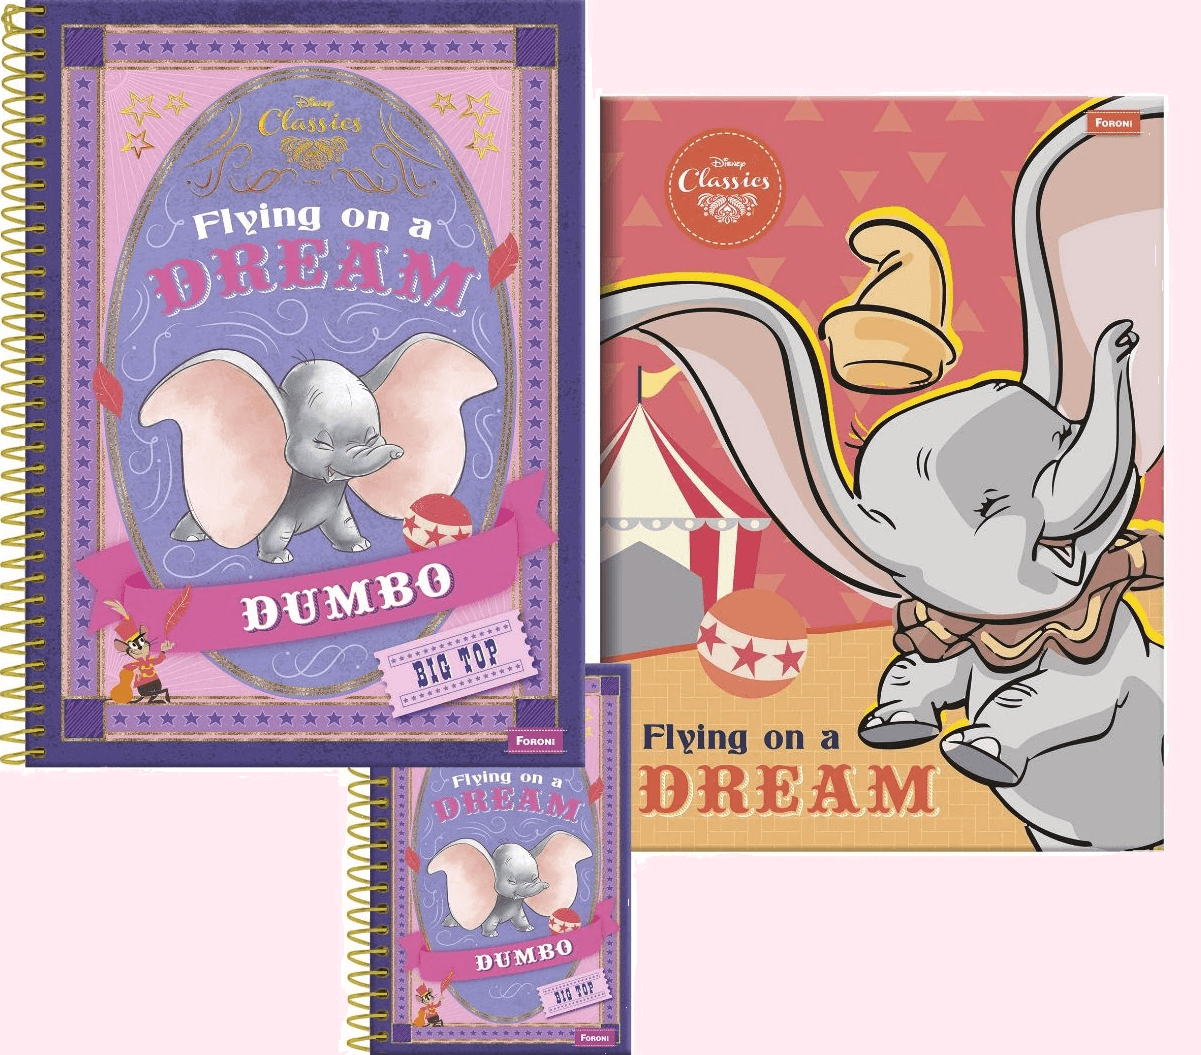 O encantador elefante Dumbo, que retorna aos cinemas nesta semana, é destaque na linha Disney Classics 2019 da Foroni!